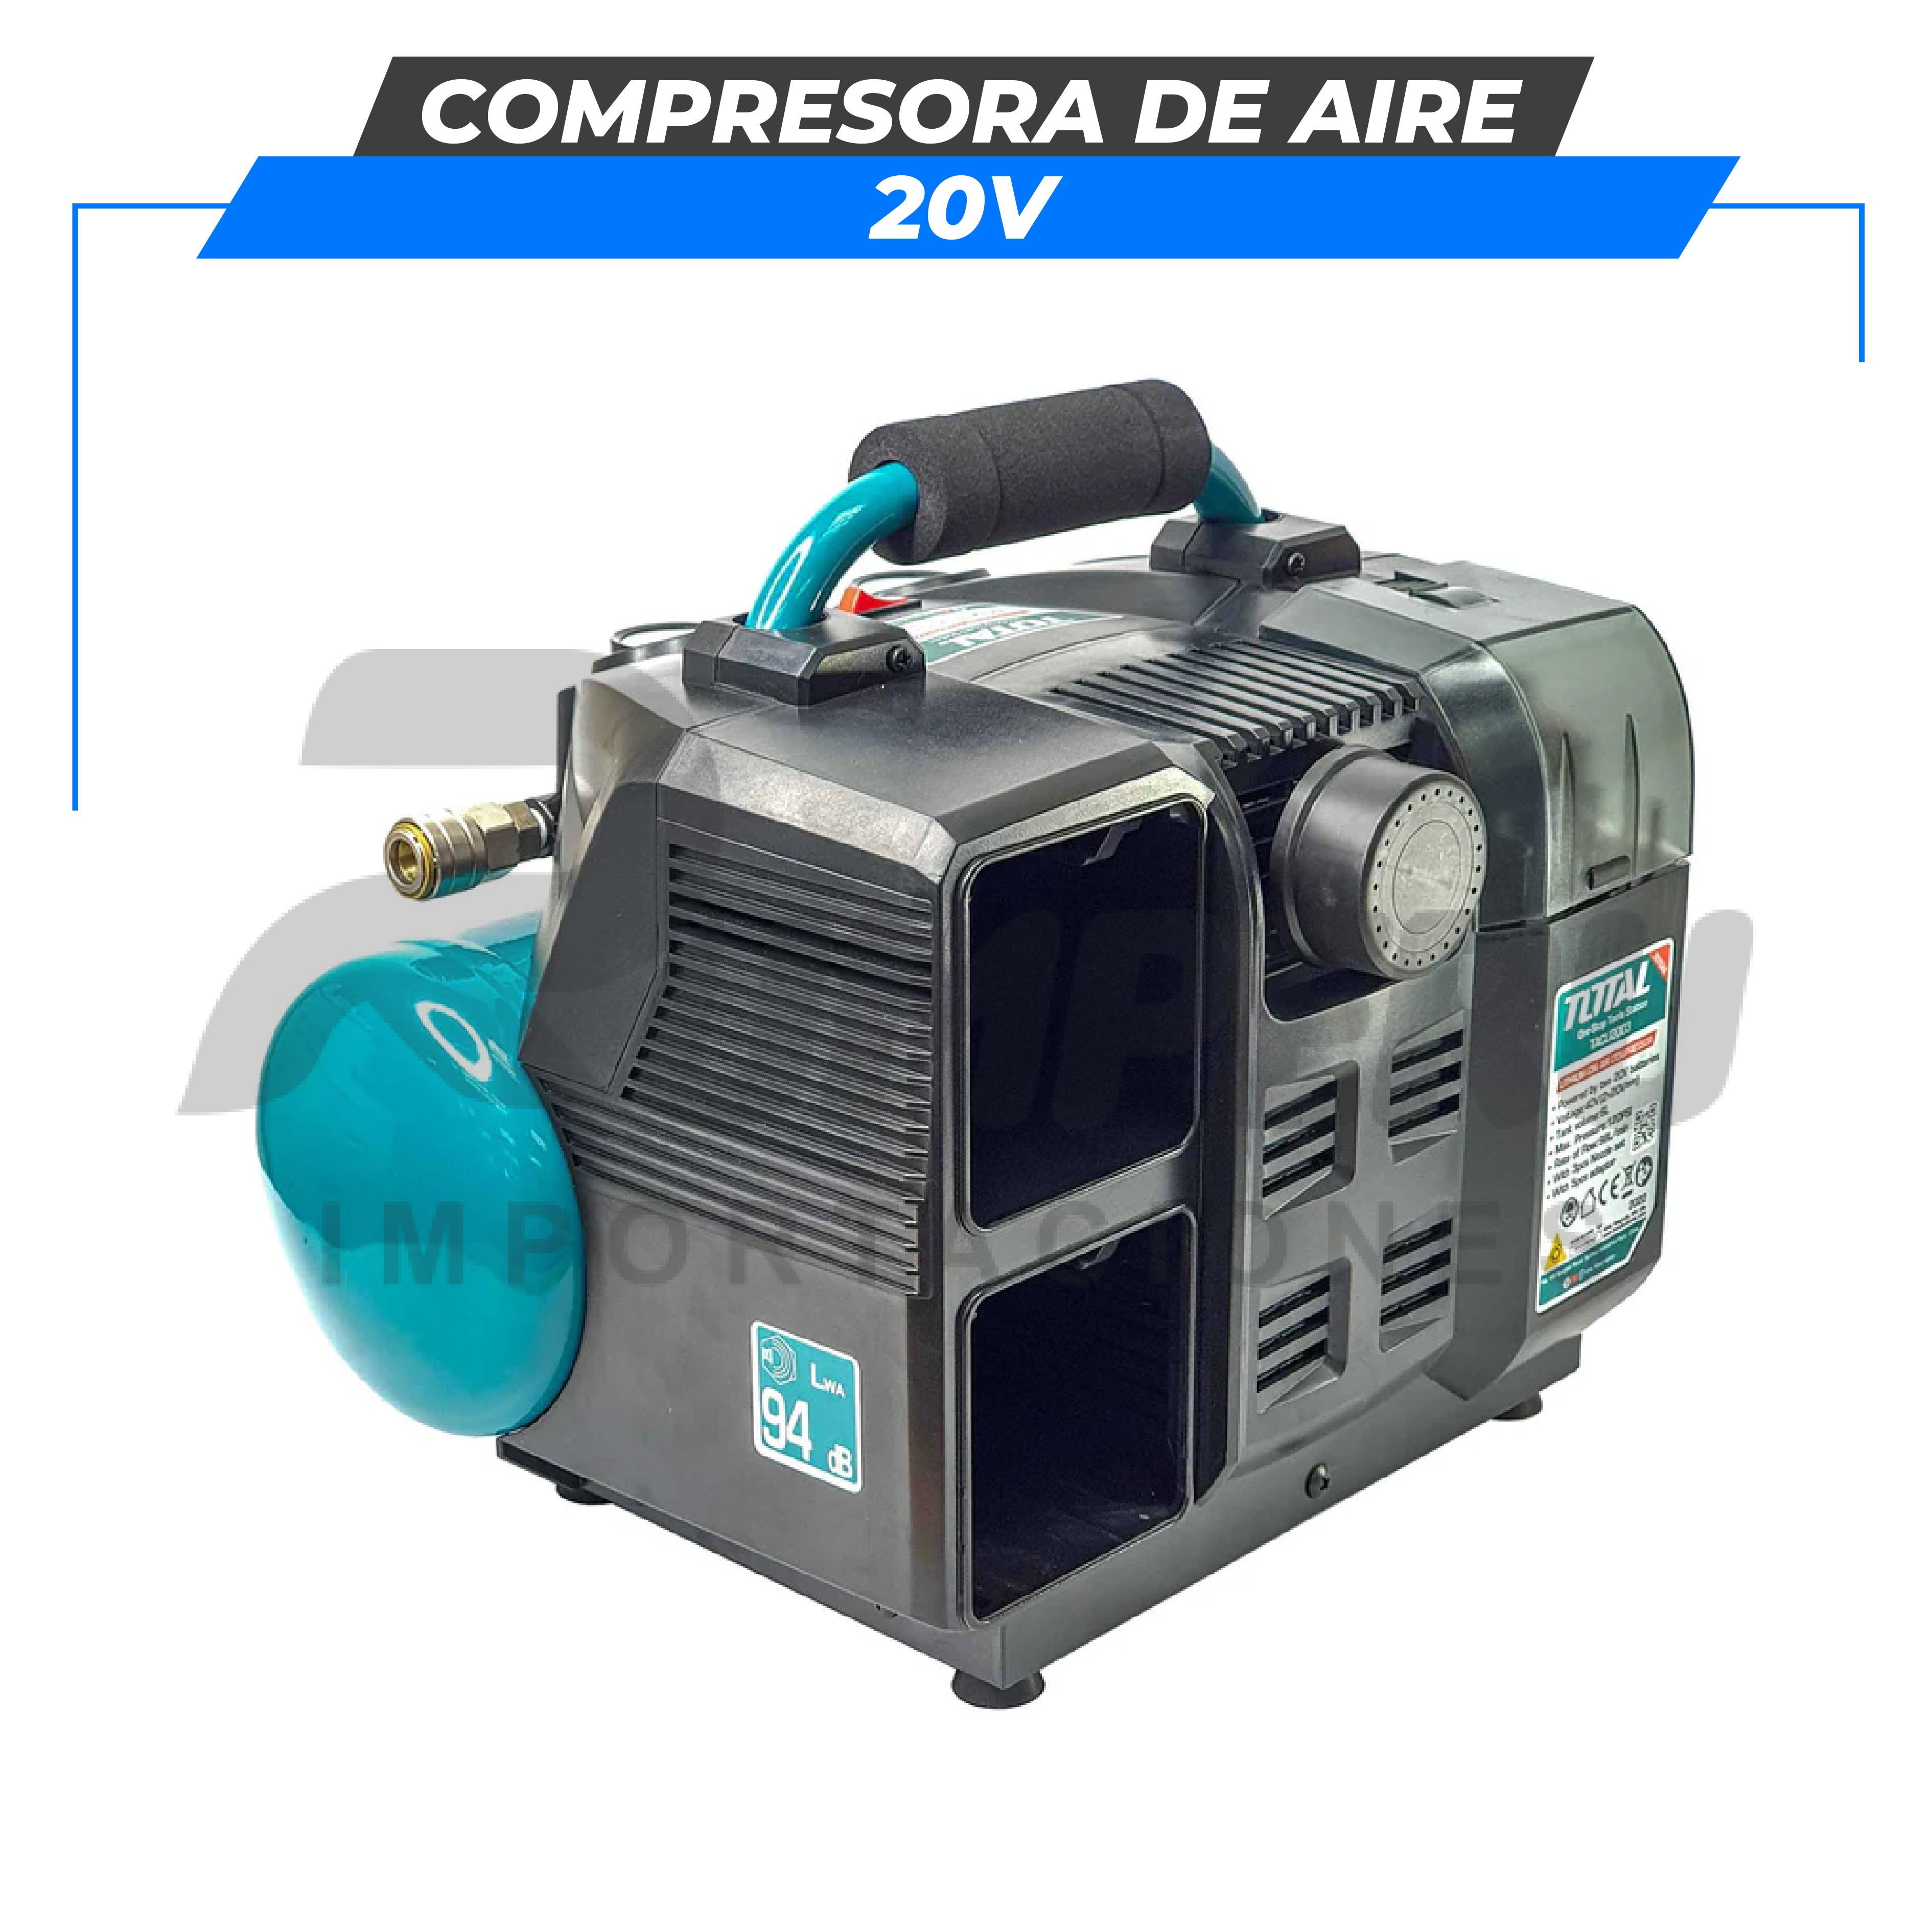 Compresora de aire 20v